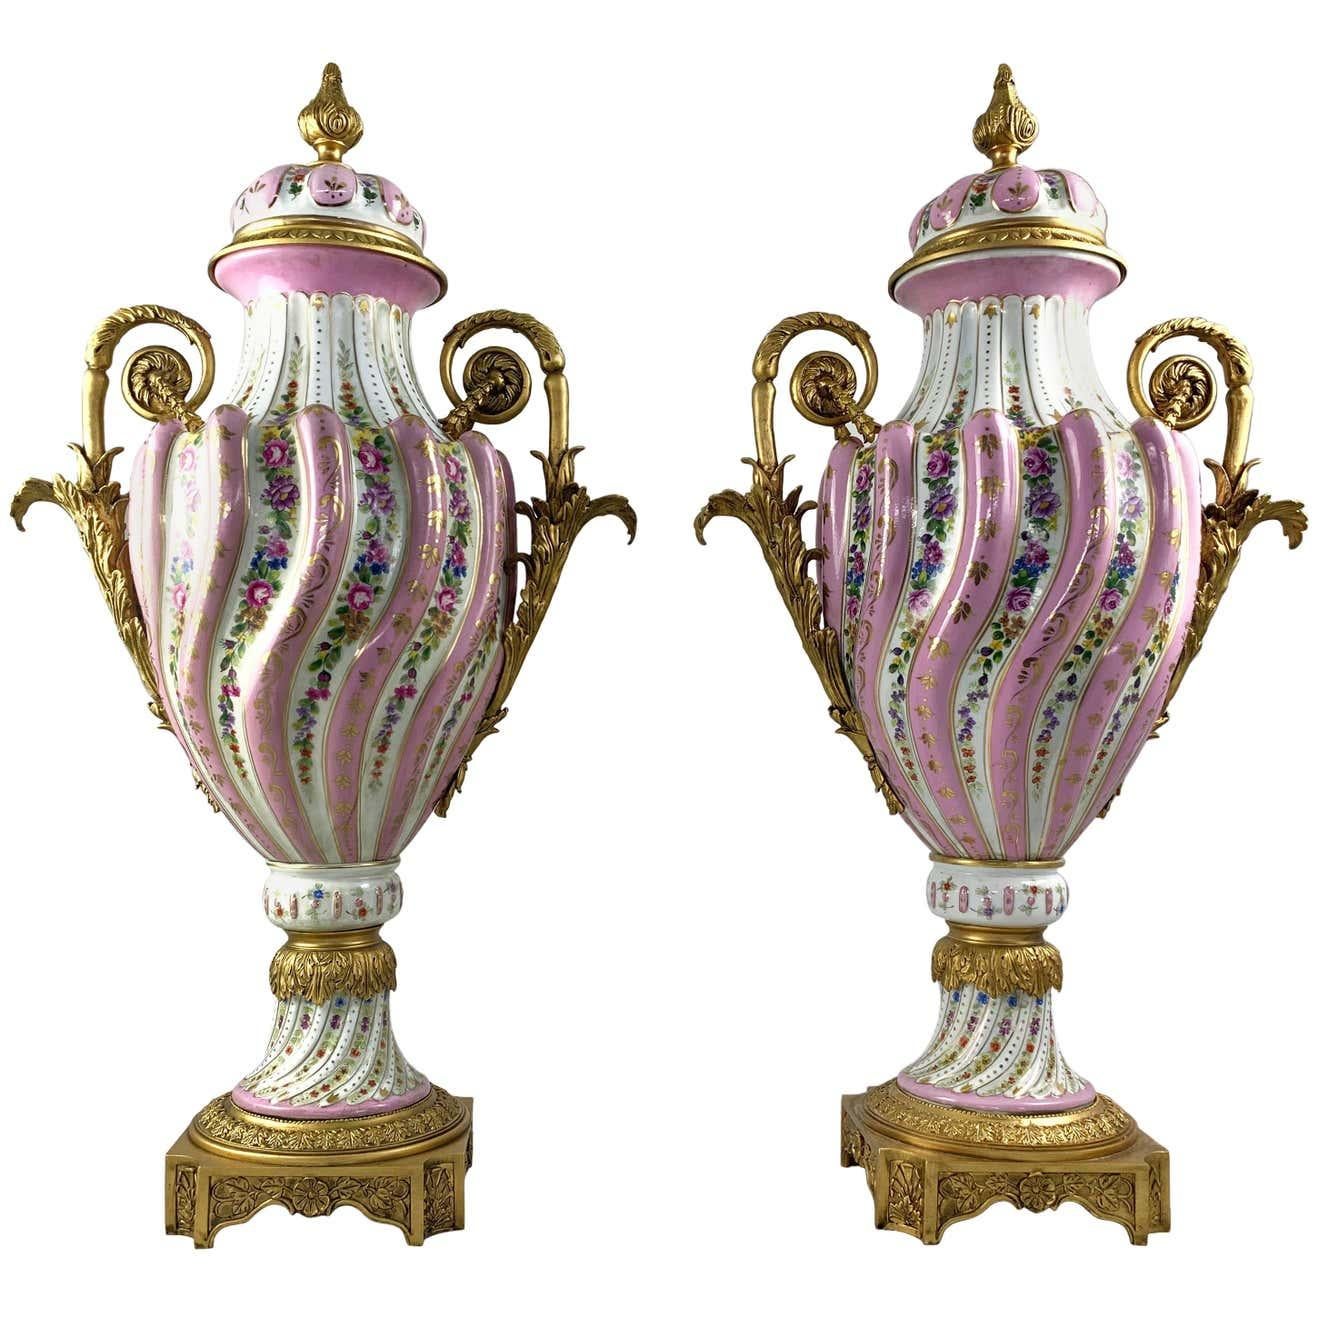 Paire de vases et de couvercles en porcelaine de style Sèvres, à deux anses, avec montures en bronze doré. 19ème siècle. Chacune avec une décoration à lobes en spirale cueillis avec des fleurs sur un fond rose. Les montures sont moulées avec des